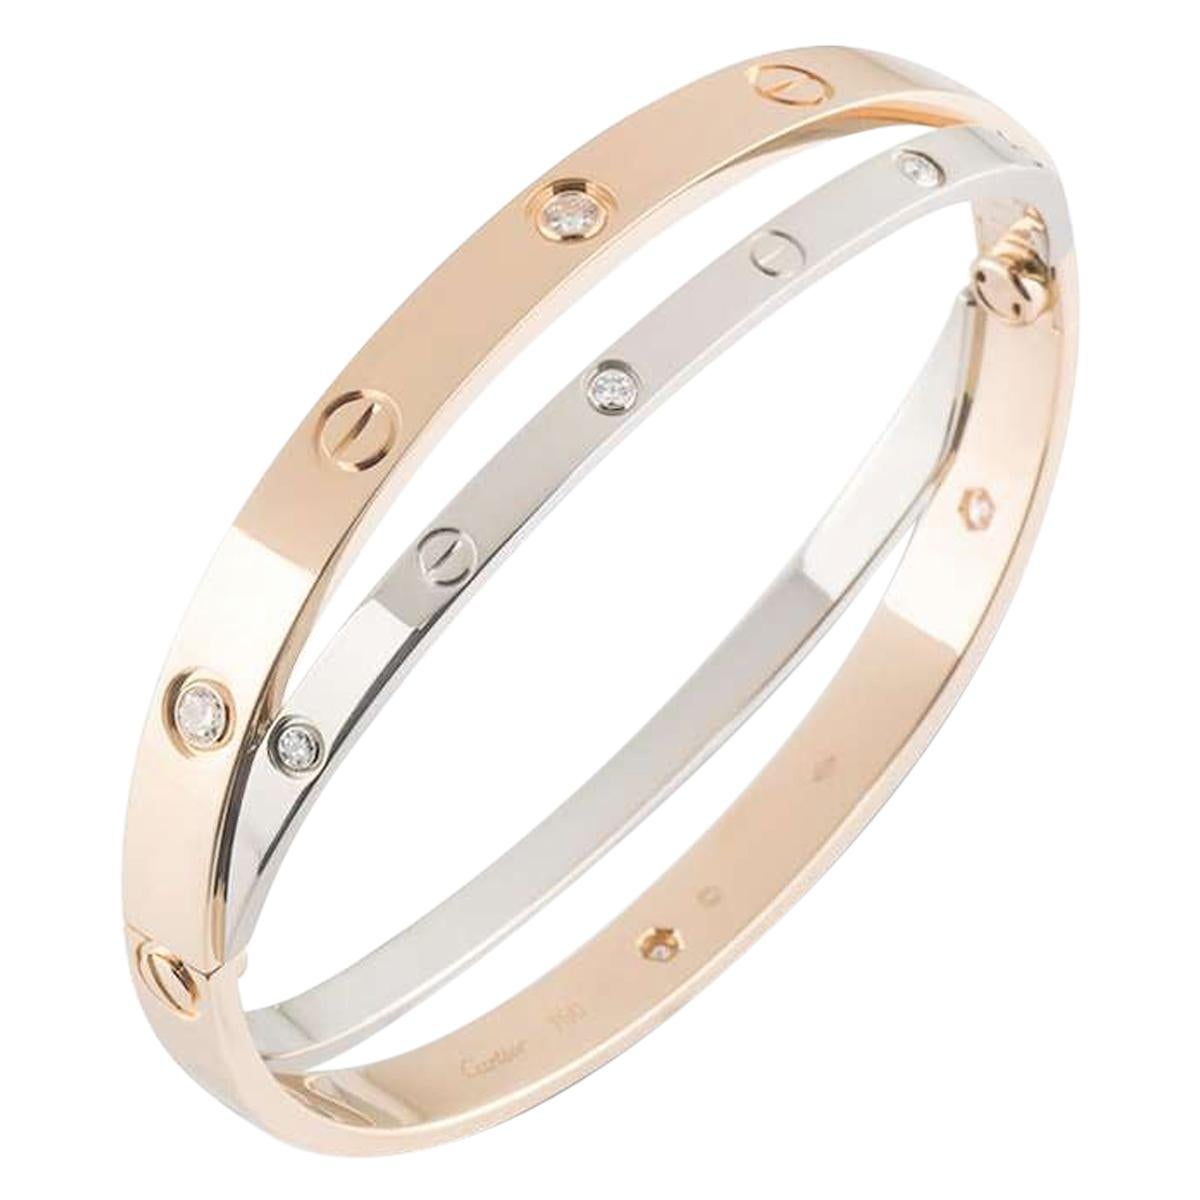 Cartier Love Rose & White Gold Diamond Bracelet N6039116